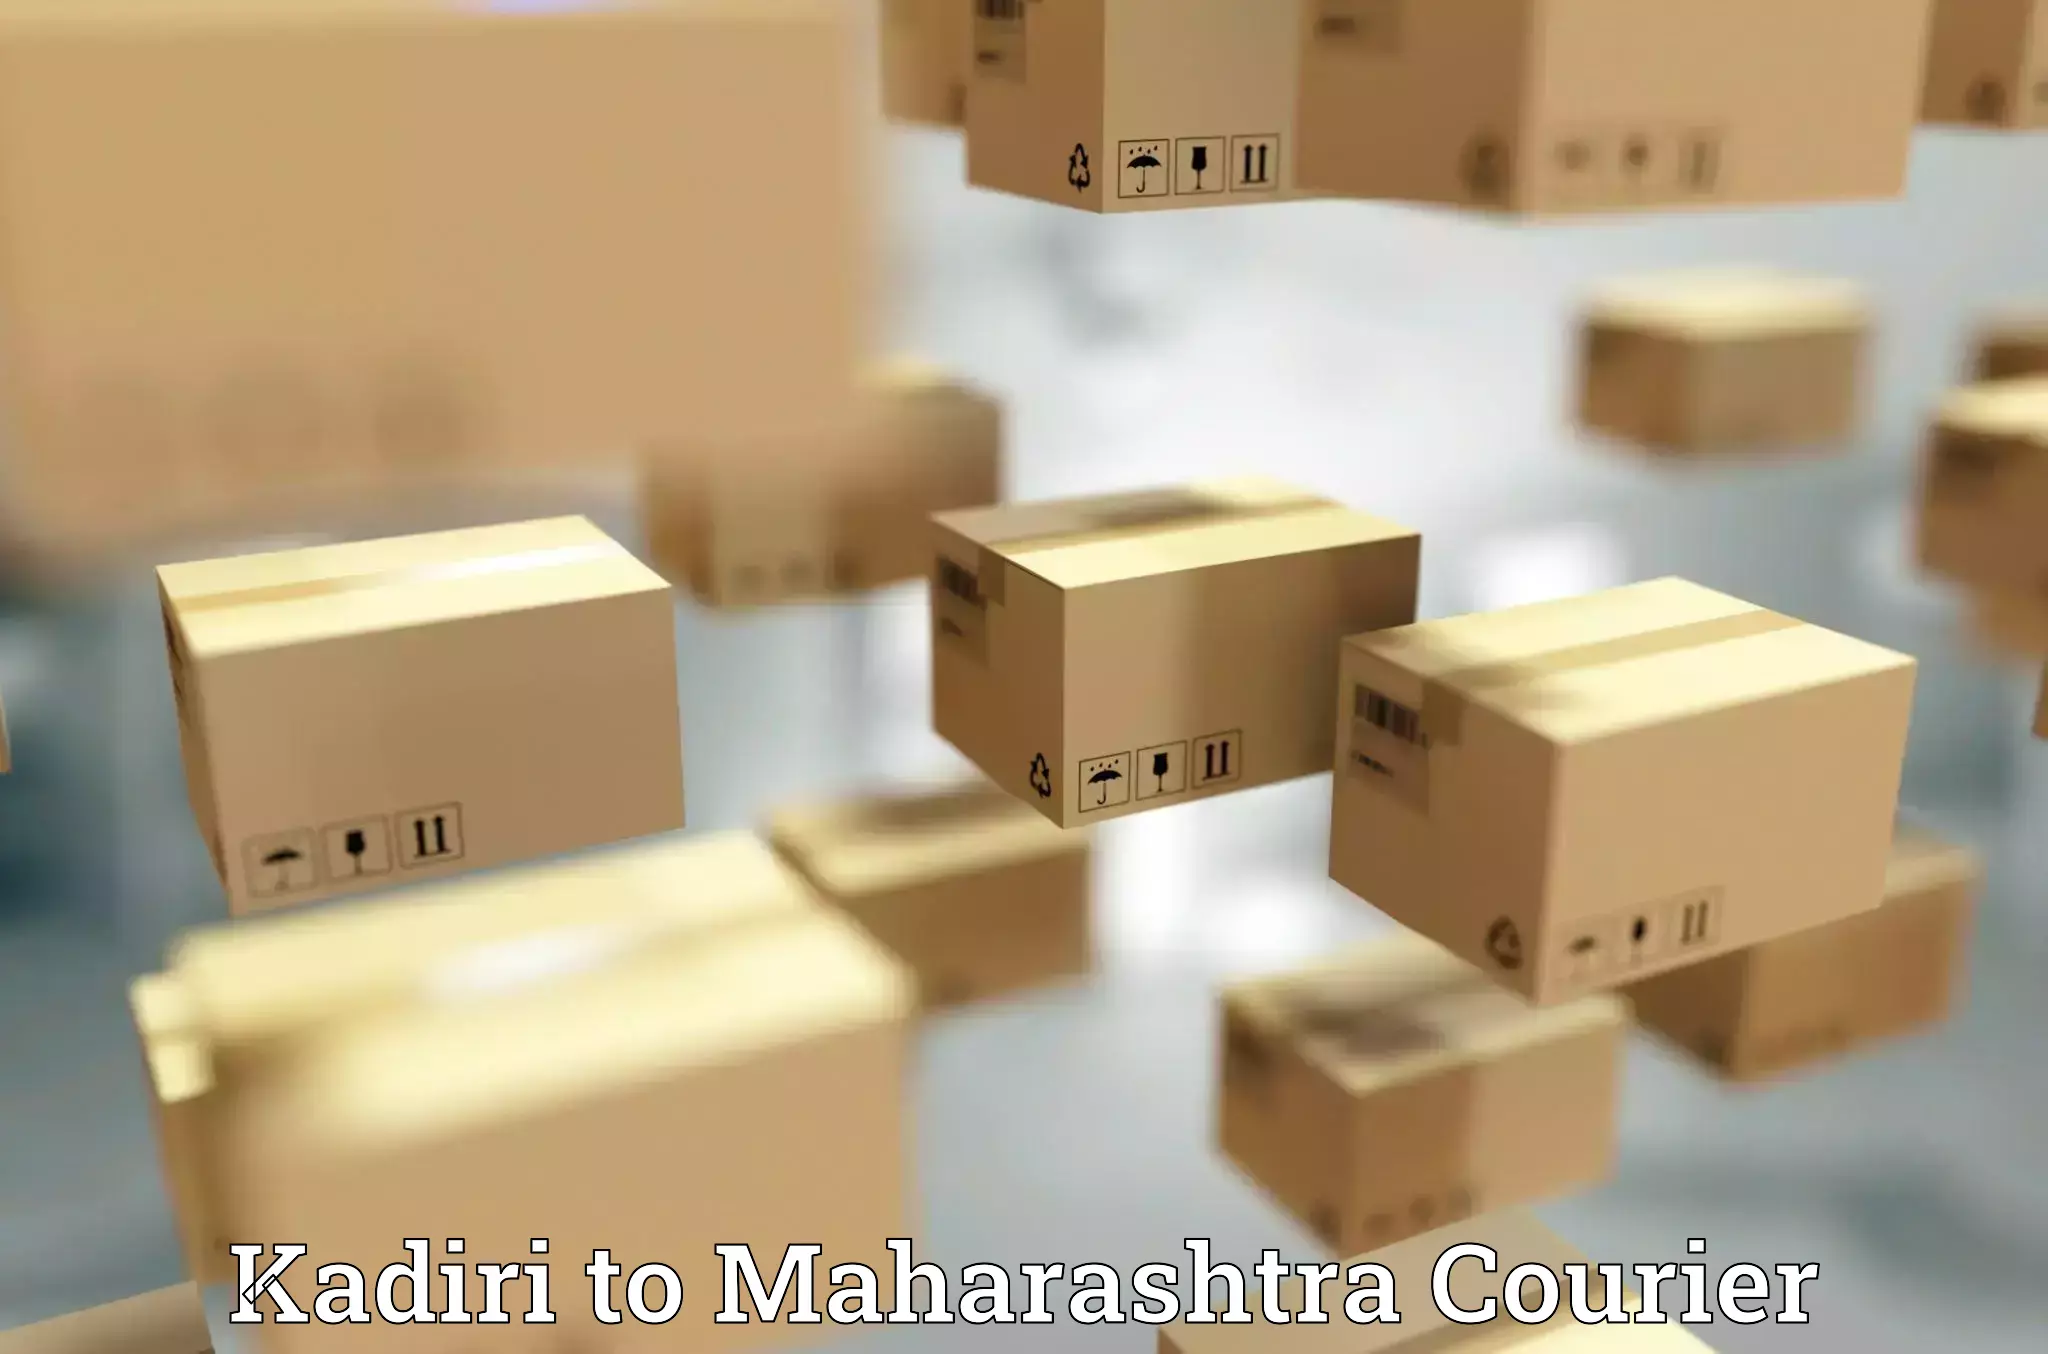 Cost-effective courier solutions Kadiri to IIIT Pune